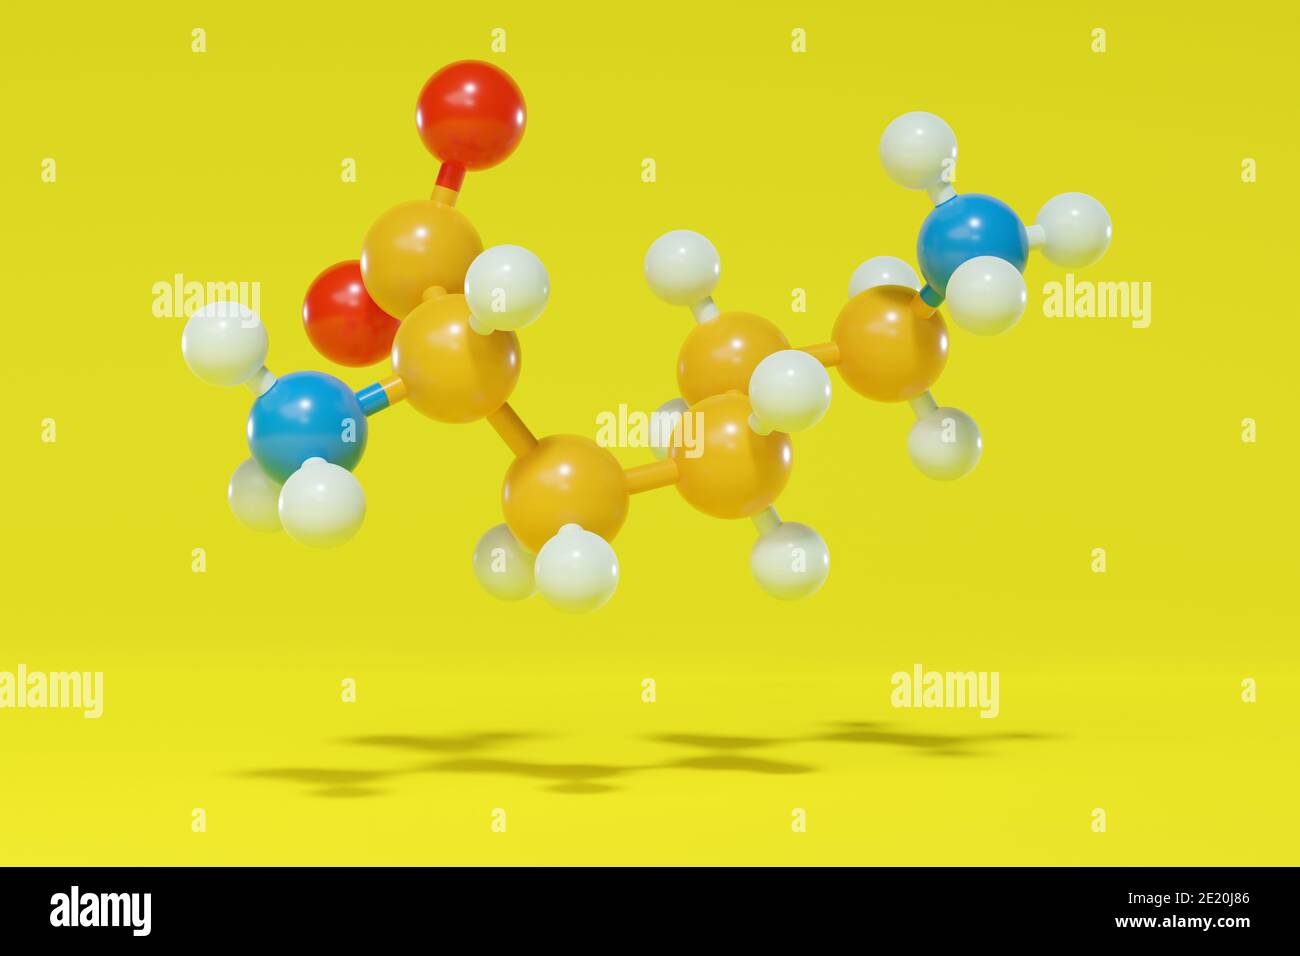 Lysin (L-Lysin, Lys, K) Aminosäuremolekül. 3D-Rendering. Kugel- und Stabmolekularmodell mit Atomen, die als farbcodierte Kugeln dargestellt sind: Wasserstoff (weiß), Stockfoto